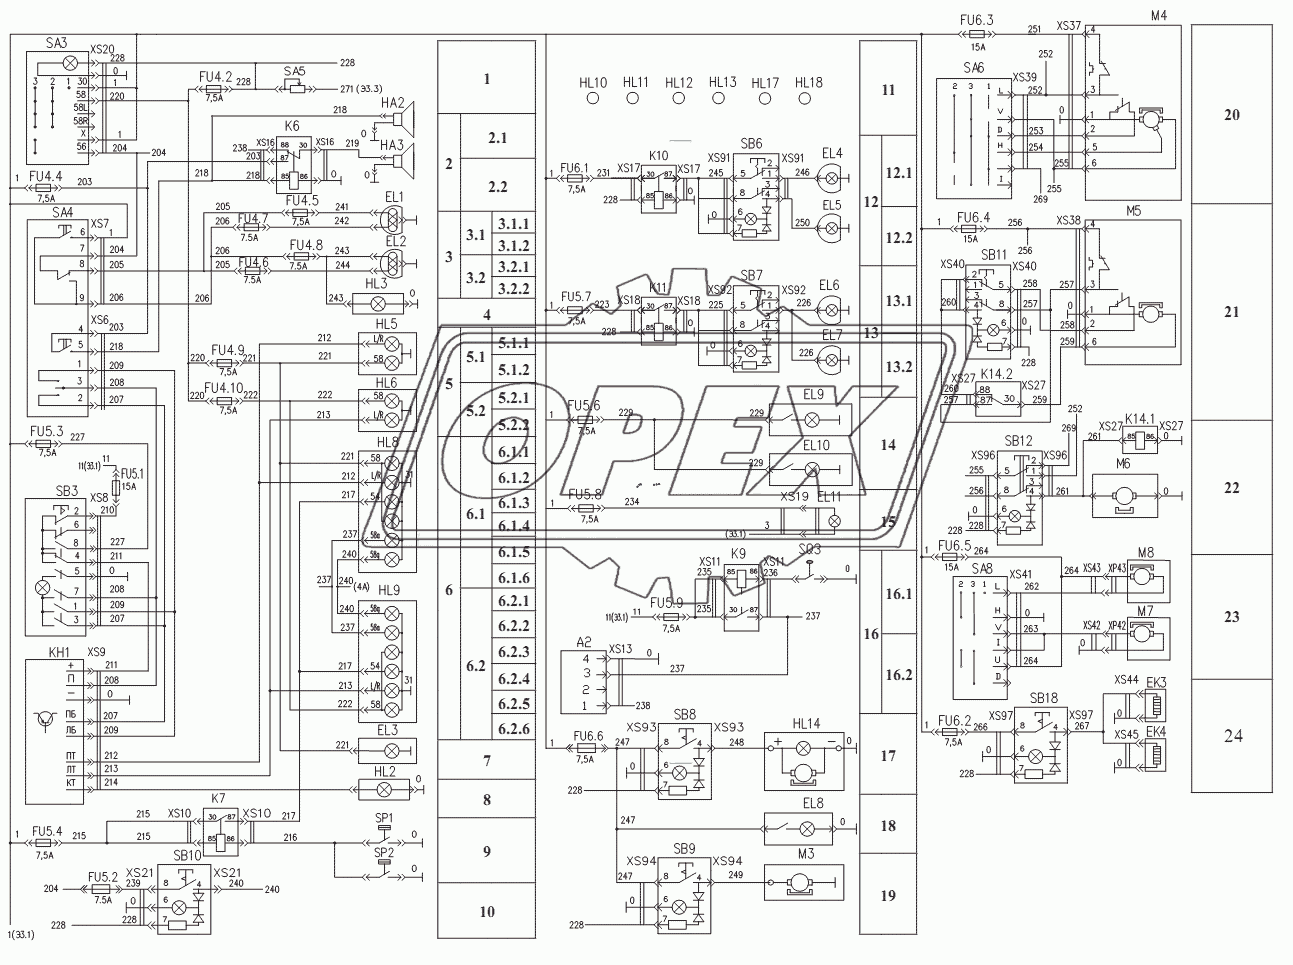 Схема электрическая принципиальная освещения и вспомогательного оборудования ТО-18Б.81.00.000 Э3.2